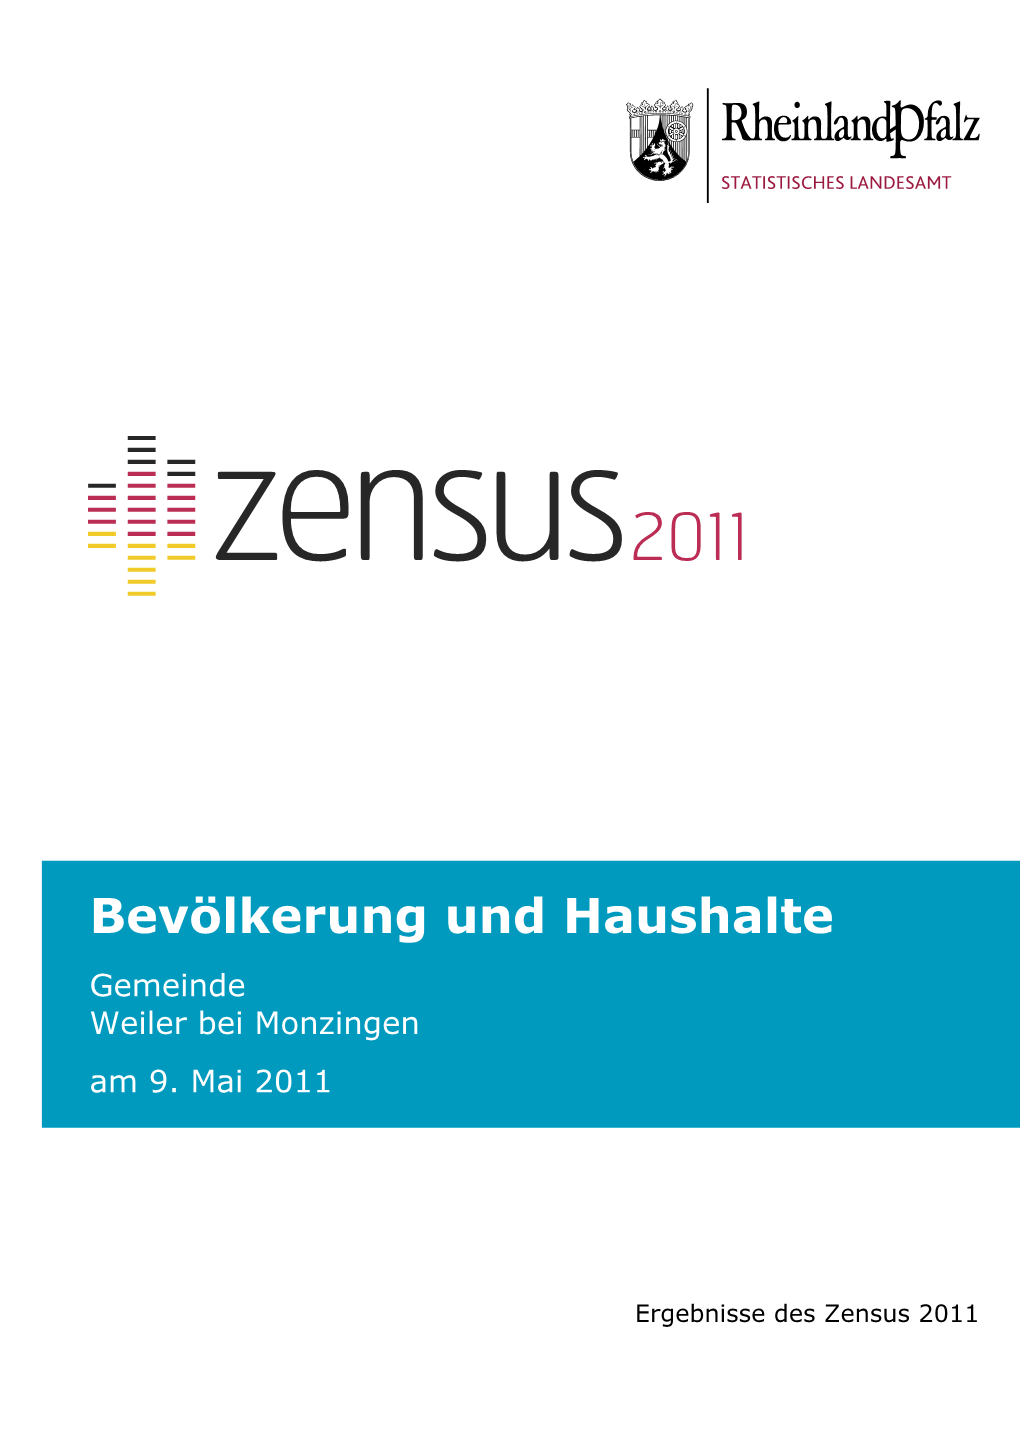 Bevölkerung Und Haushalte Am 9. Mai 2011, Weiler Bei Monzingen